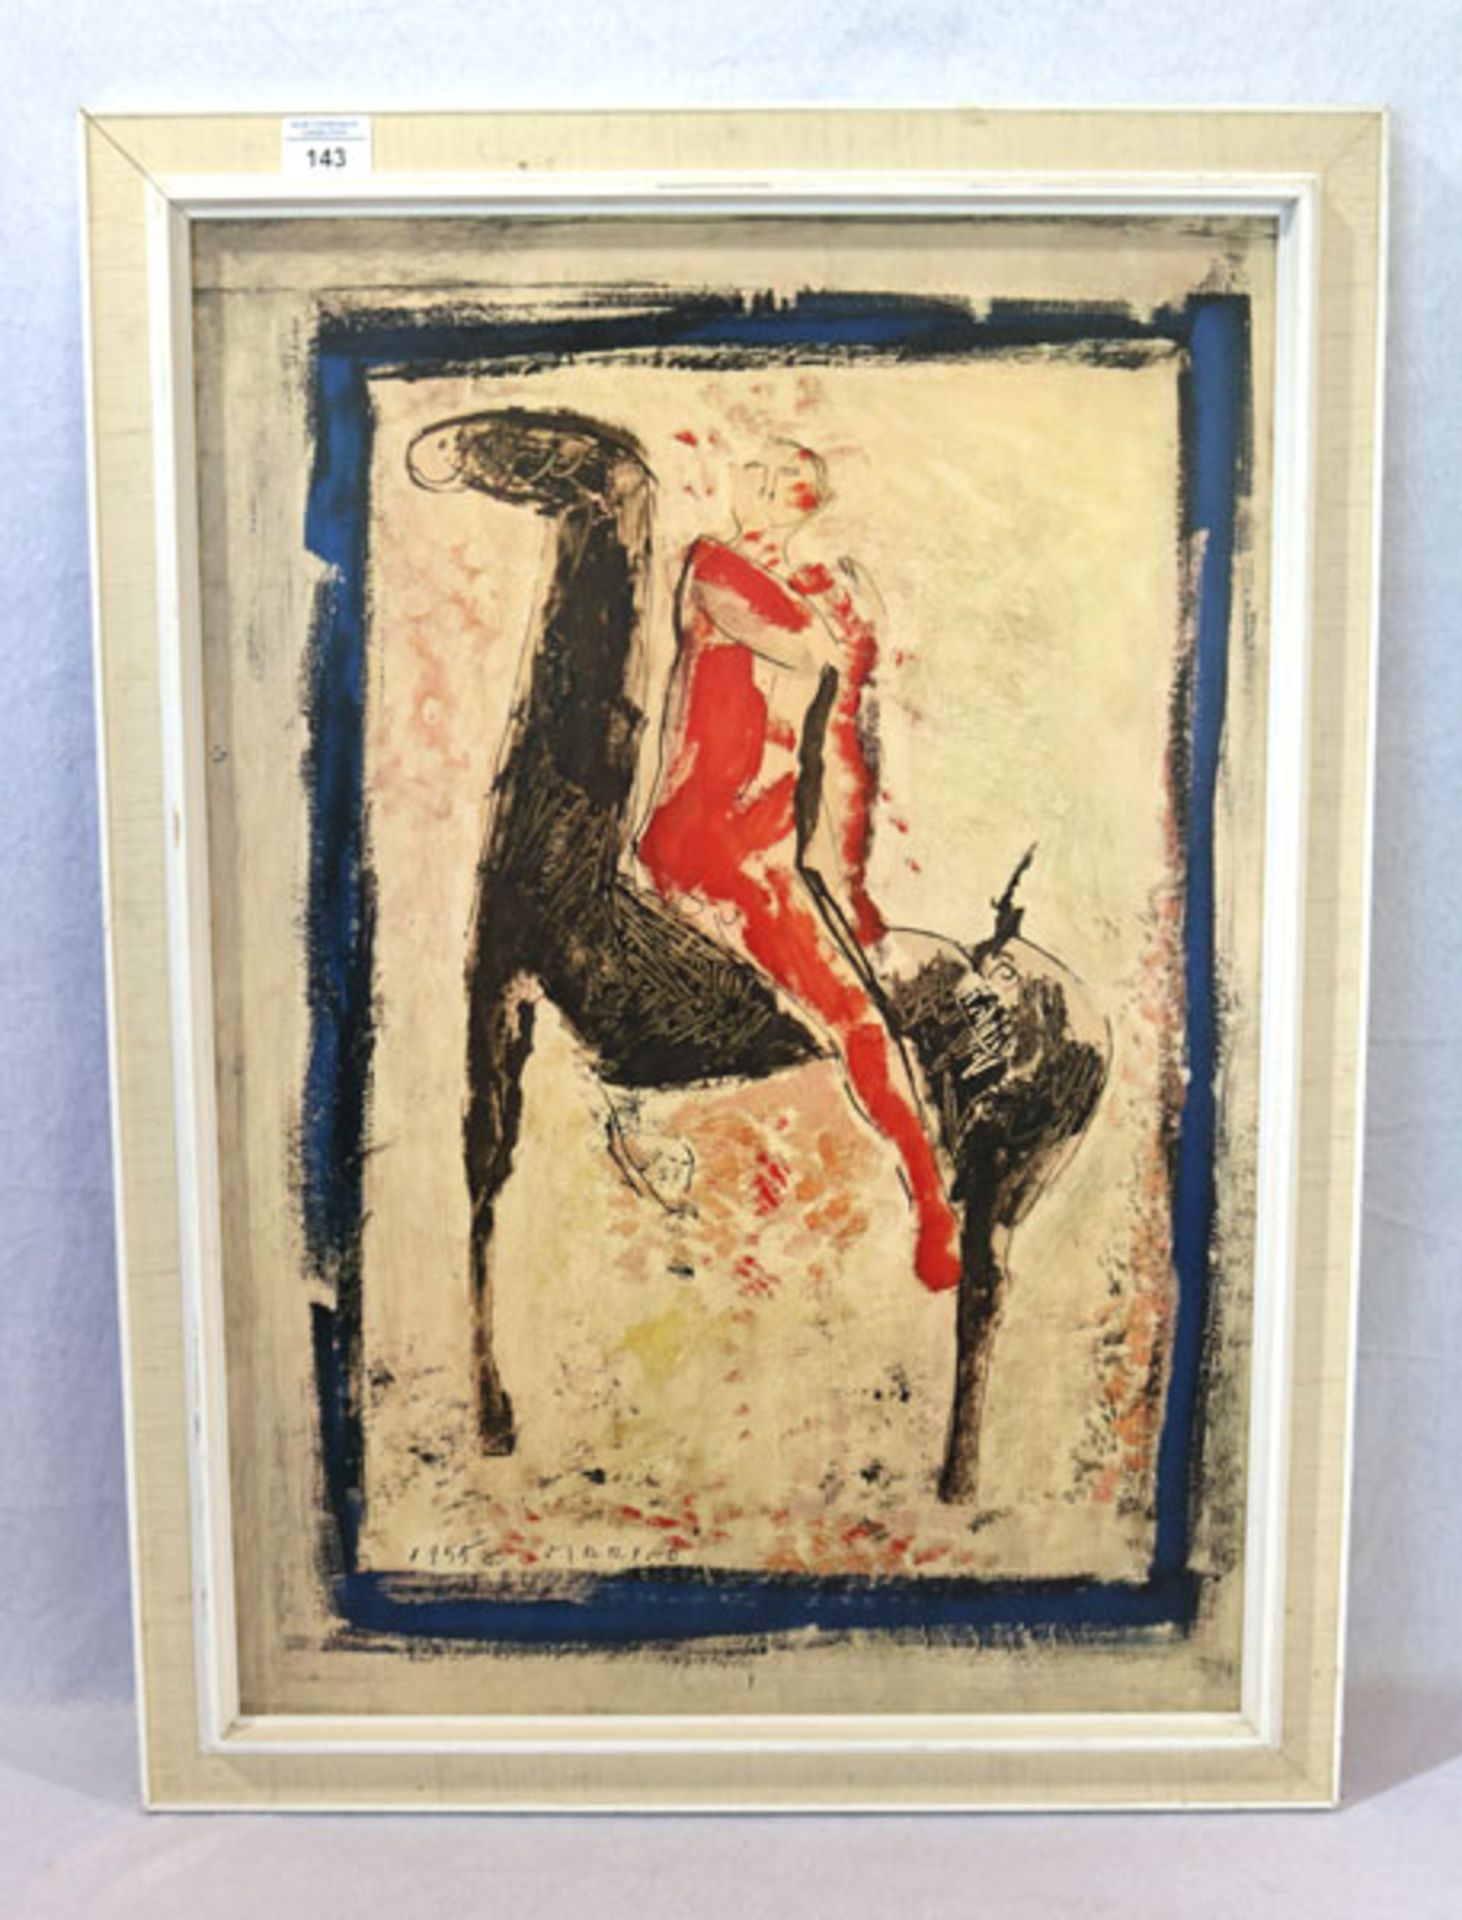 Druck 'Der rote Reiter', nach Marini, gerahmt, Rahmen bestossen, incl. Rahmen 78 cm x 57 cm